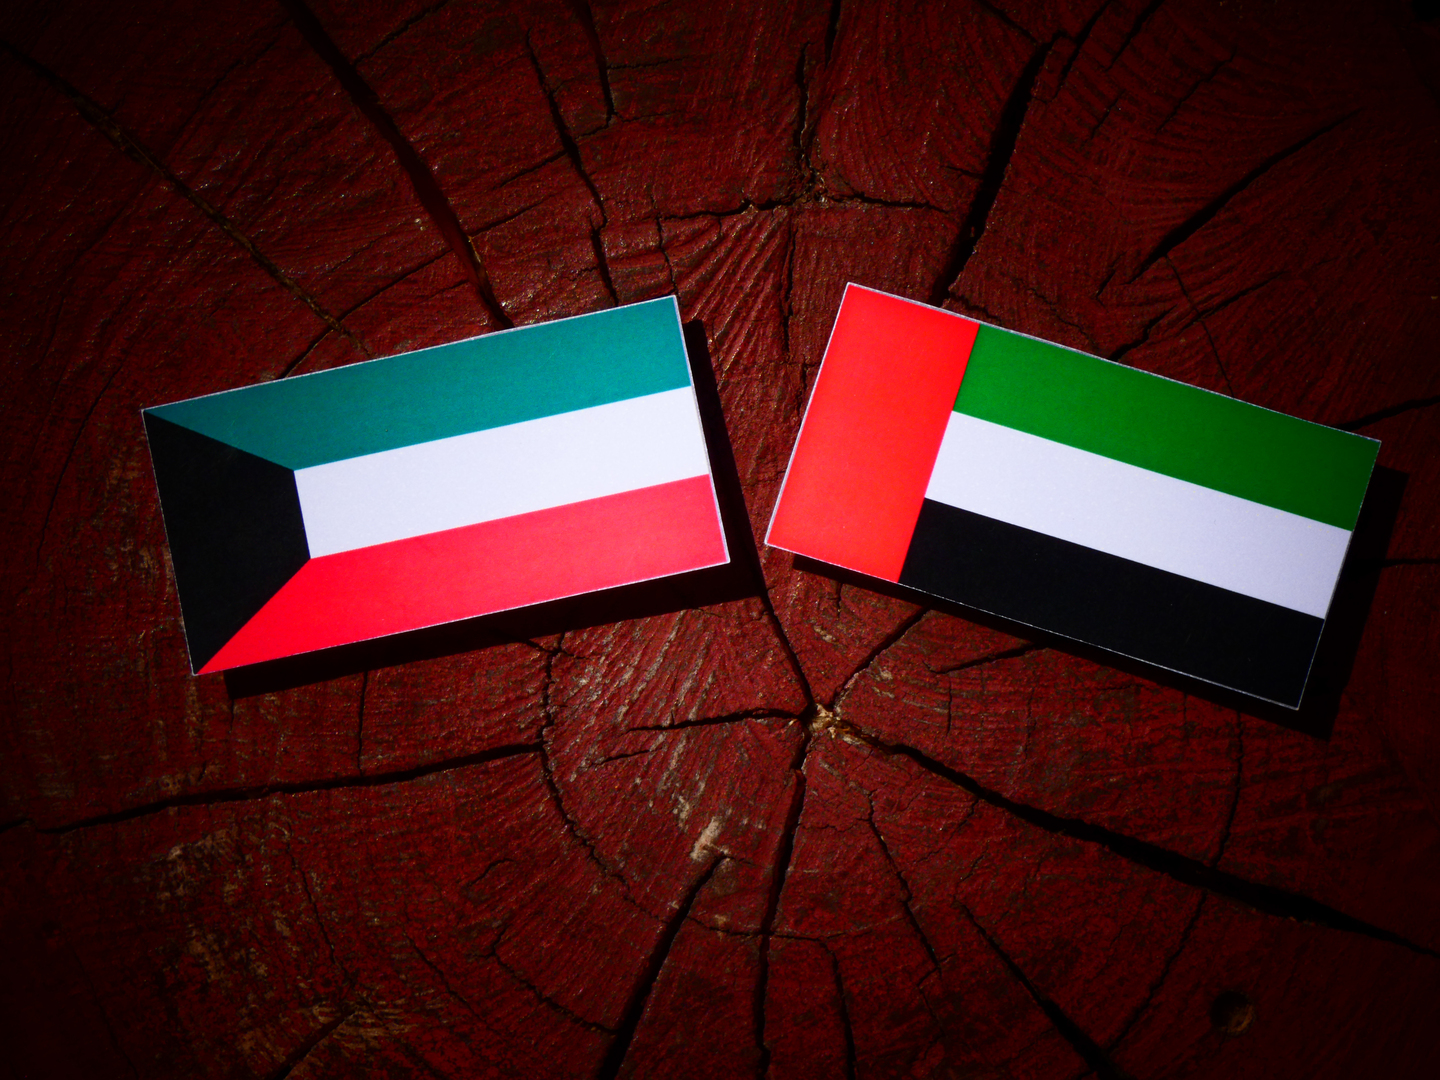 الكويت تشكر الإمارات بعد ضبط مطلوب بتهمة الاستيلاء على مبلغ ضخم وتوضح التفاصيل